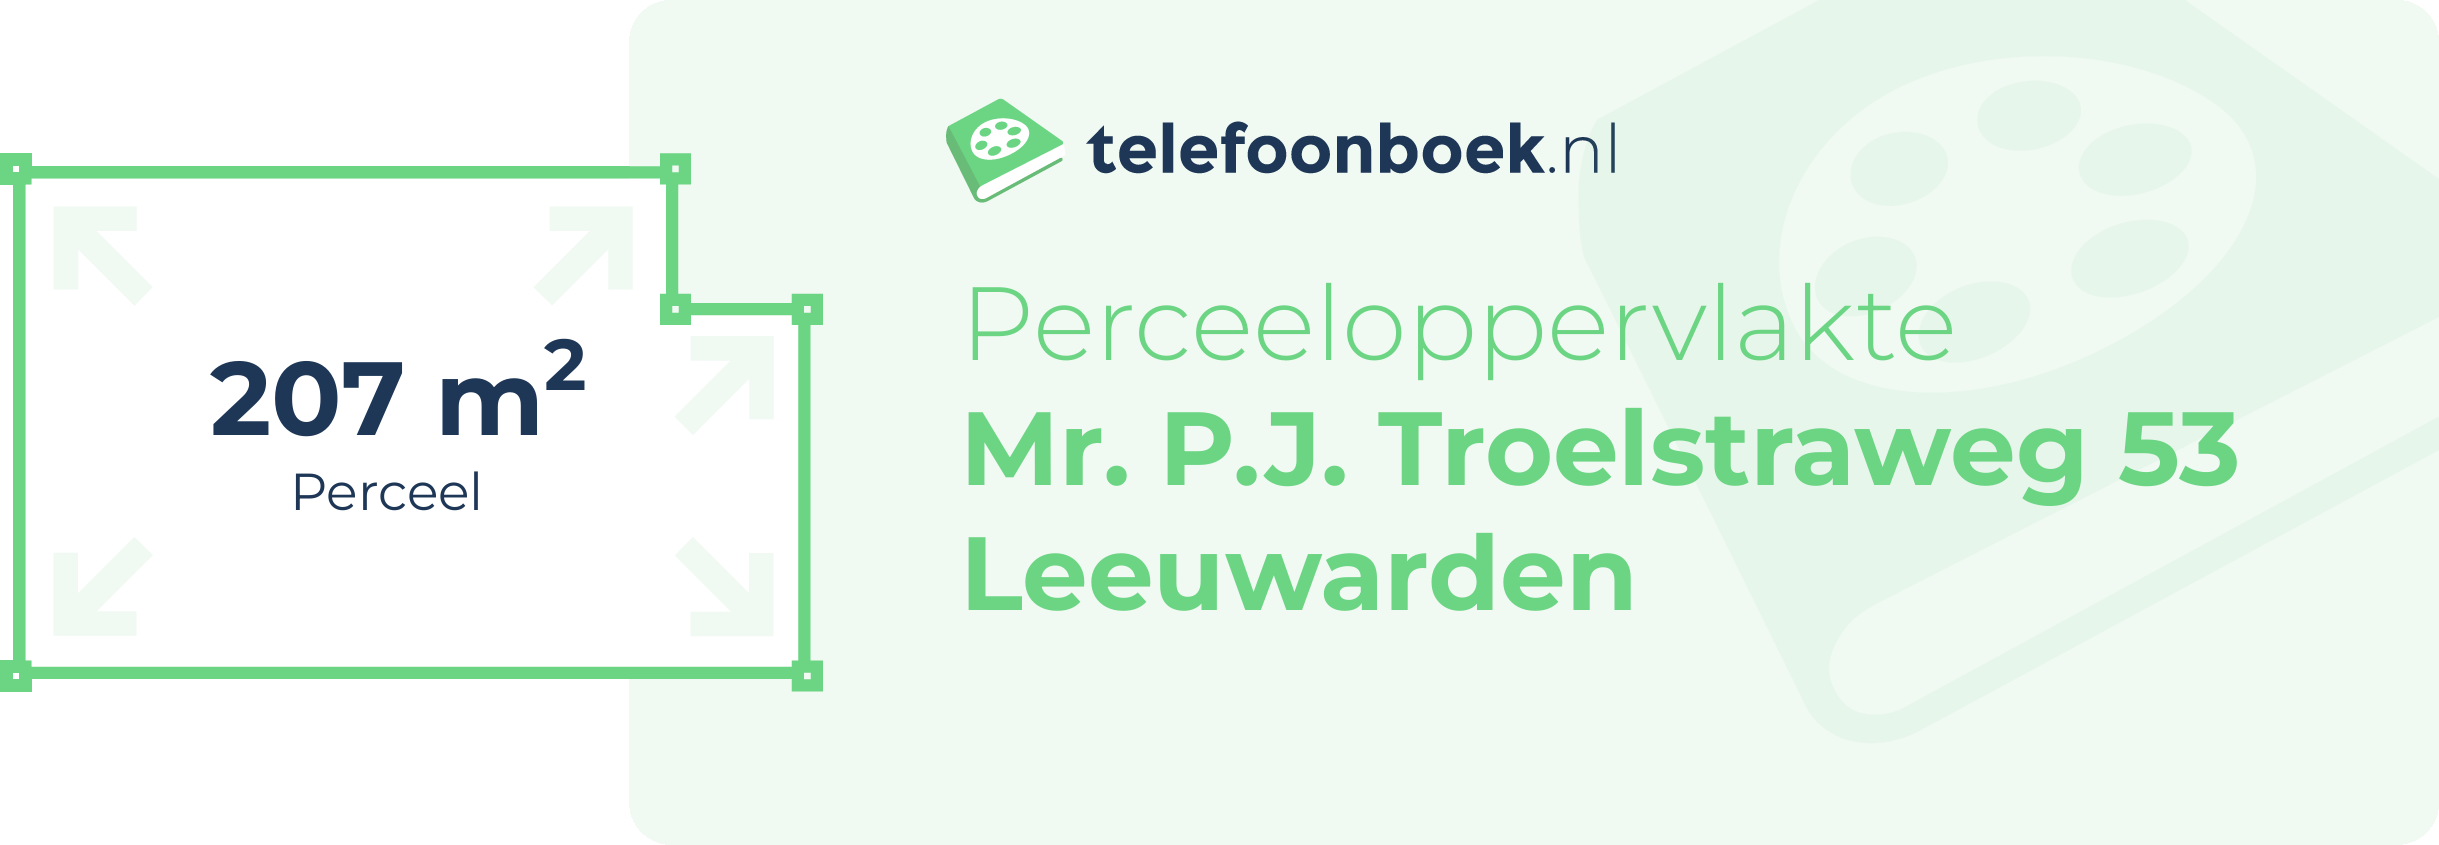 Perceeloppervlakte Mr. P.J. Troelstraweg 53 Leeuwarden